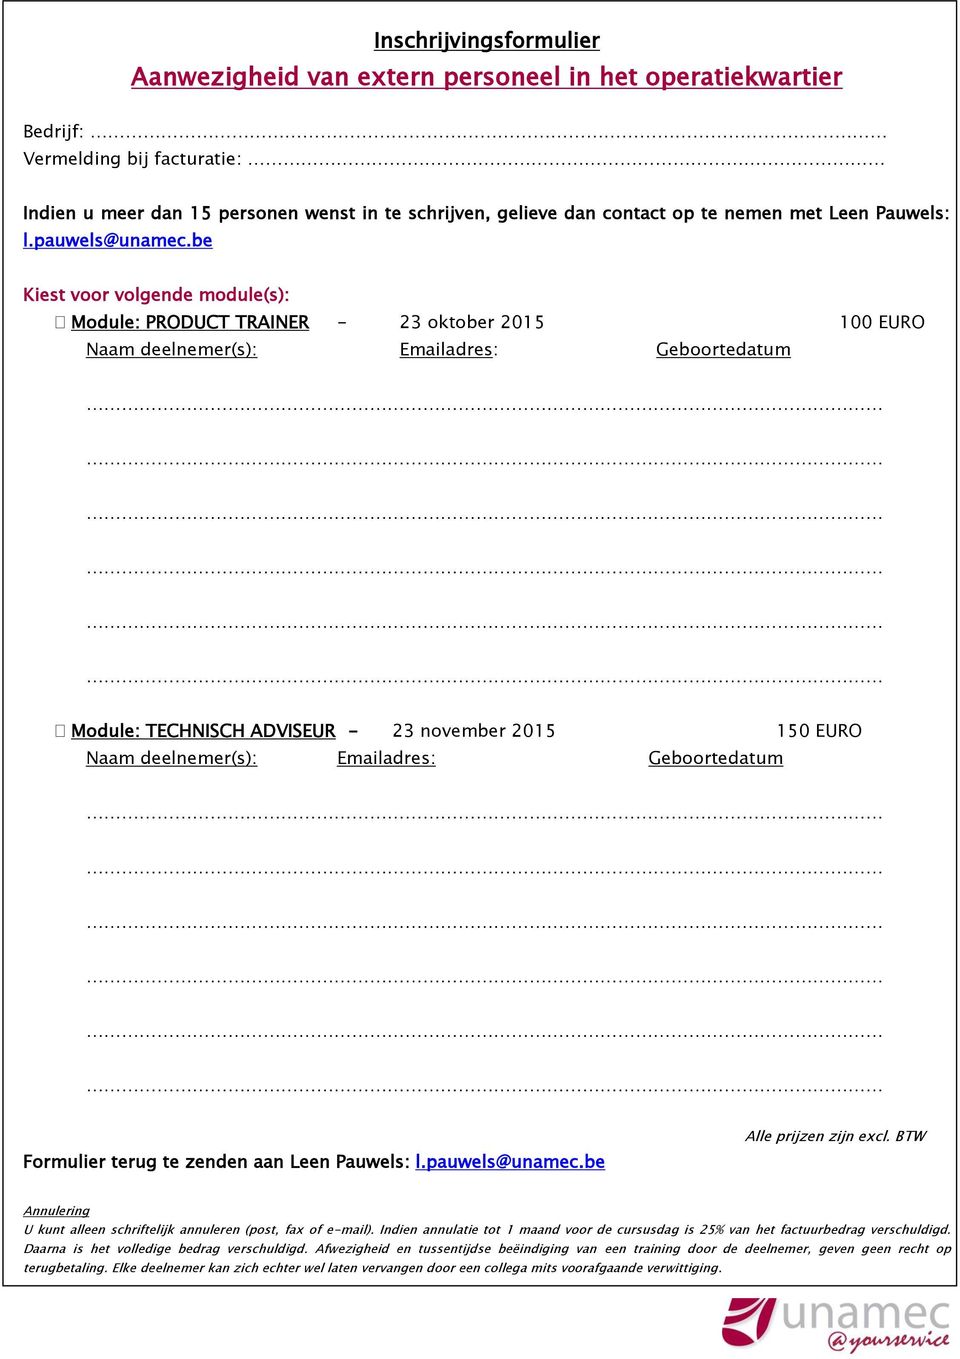 be Kiest voor volgende module(s): Module: PRODUCT TRAINER - 23 oktober 2015 100 EURO Naam deelnemer(s): Emailadres: Geboortedatum Module: TECHNISCH ADVISEUR - 23 november 2015 150 EURO Naam